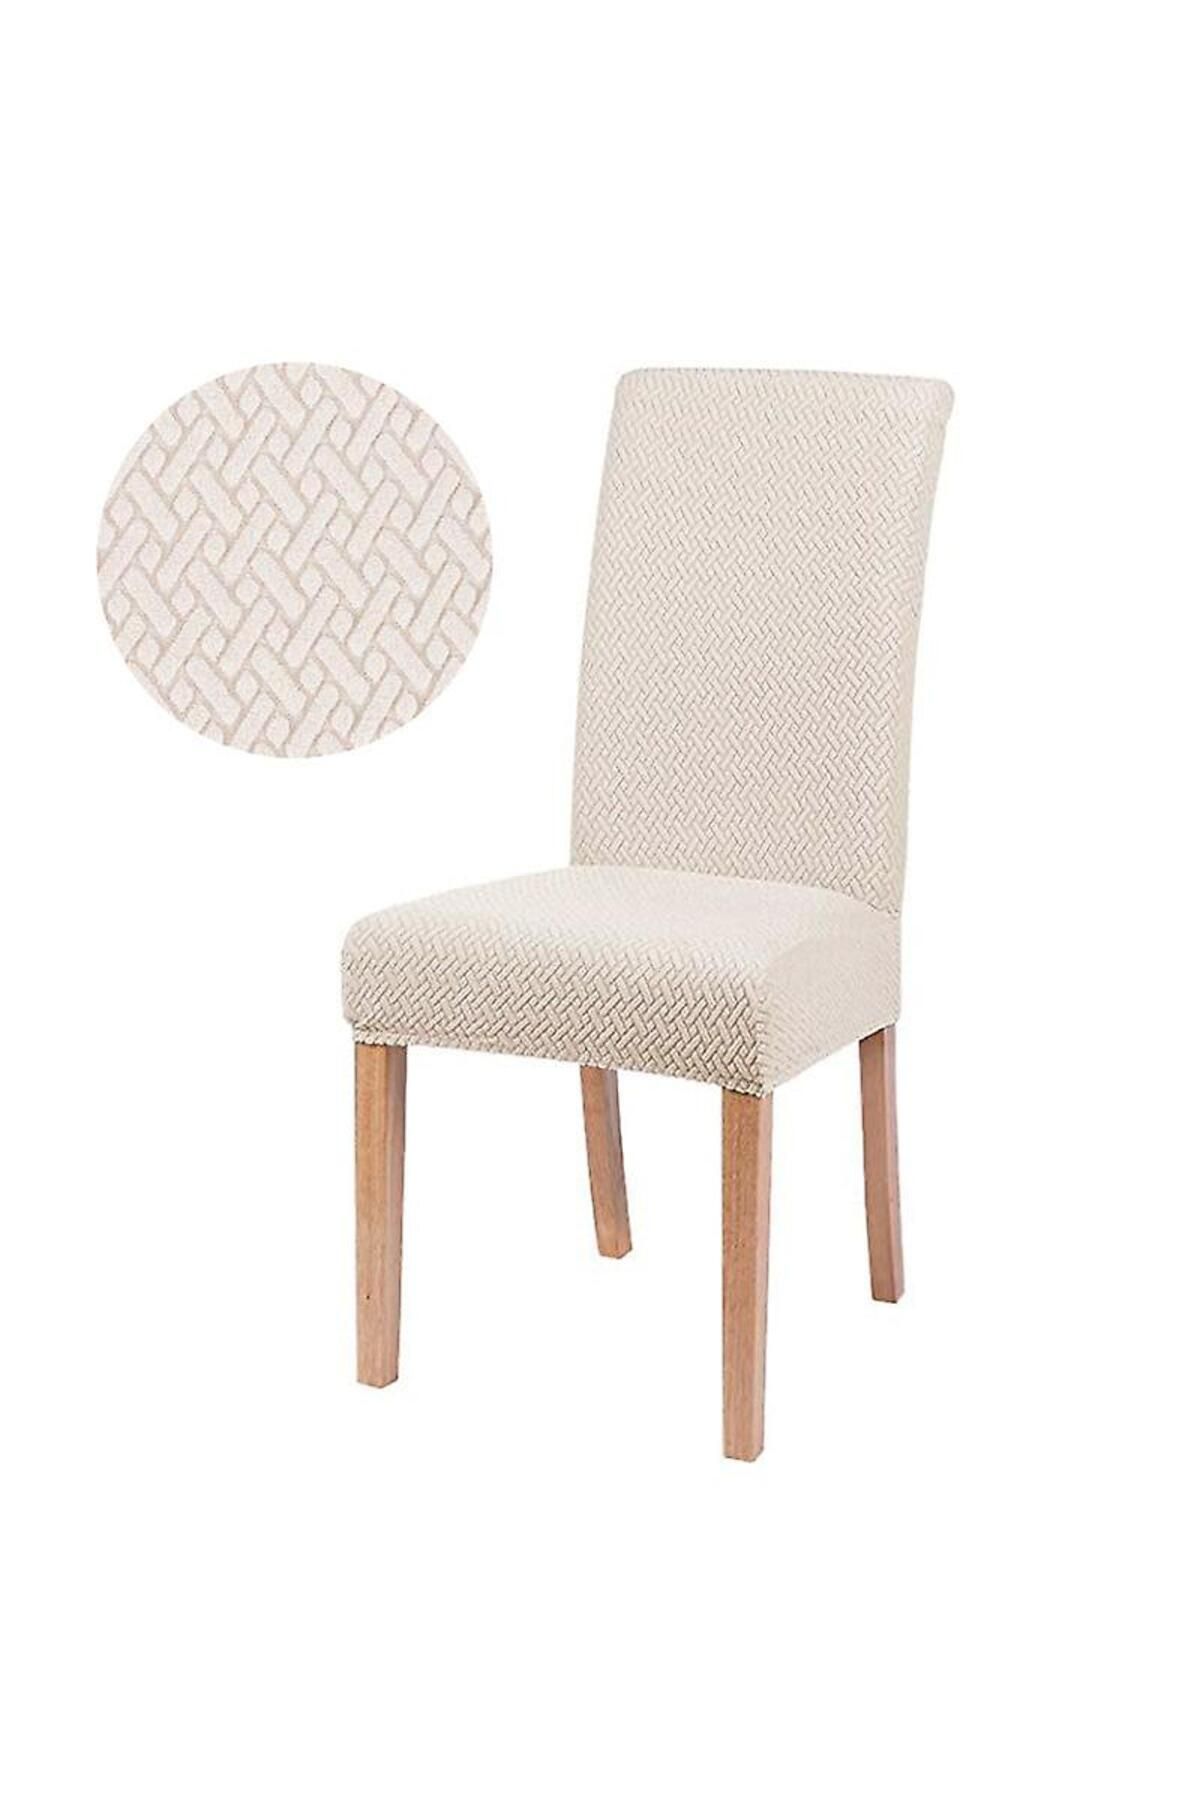 Genel Markalar Tuğla desenli likrali kumaş sandalye örtüsü sandalye kılıfı lastikli esnekli 1 adet